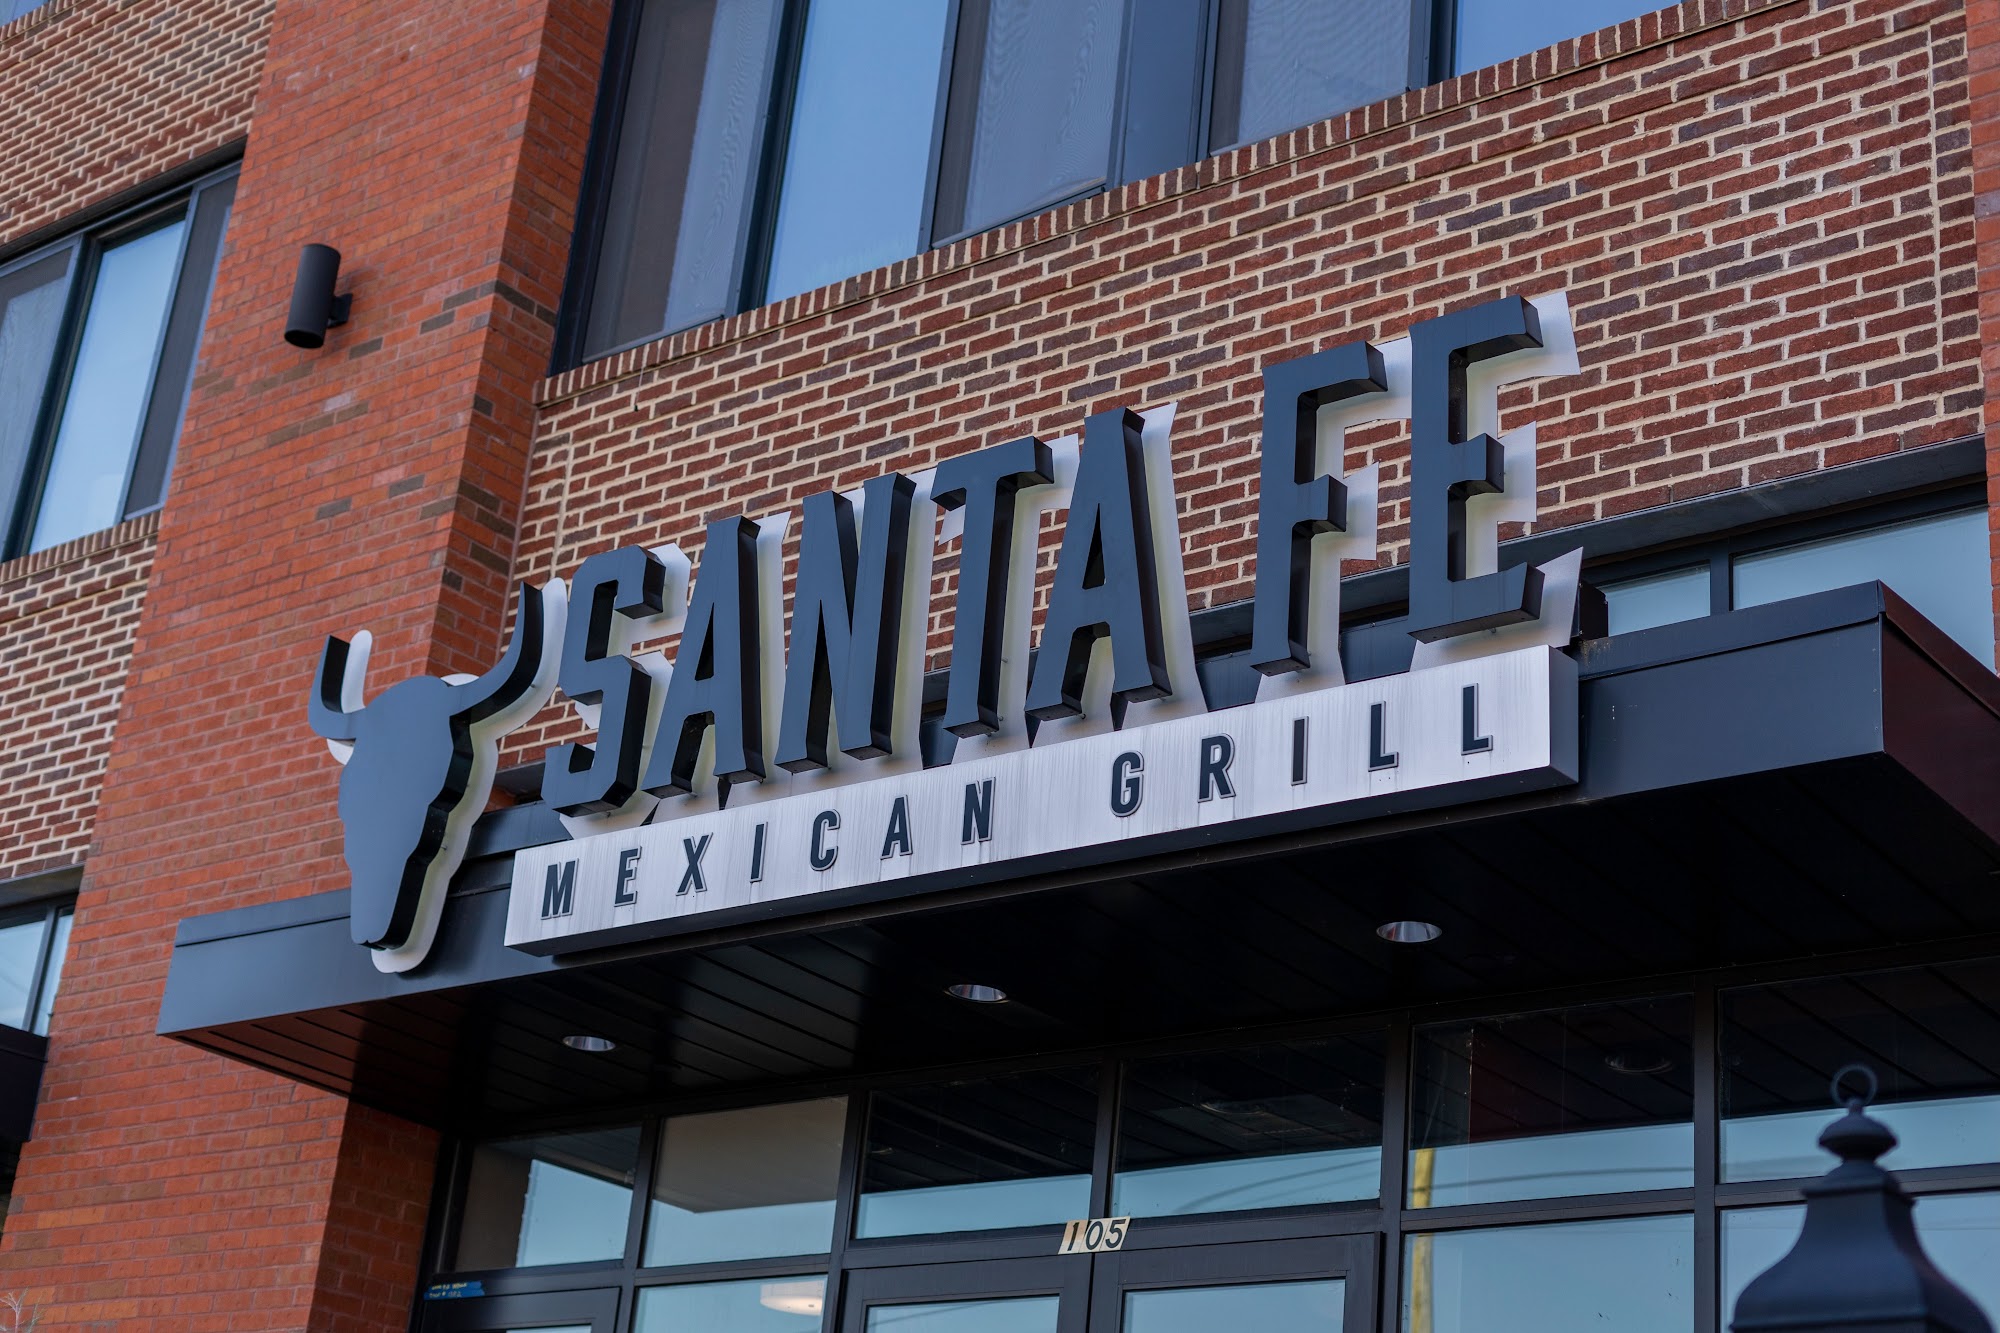 Santa Fe Mexican Grill - Wilmington